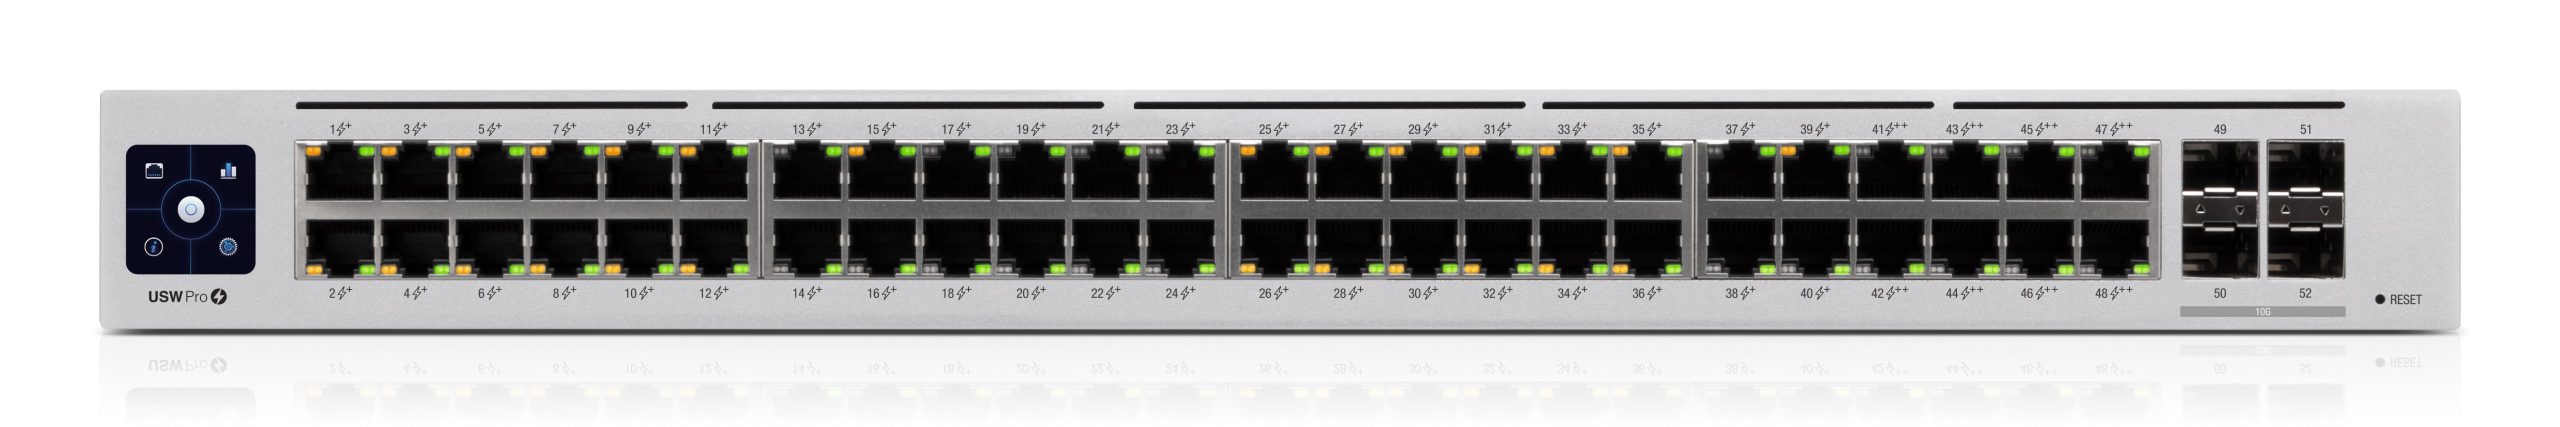 Switch USW-Pro-48-POE Gen2 Ubiquiti Networks - Capa 3 de 48 puertos PoE 802.3at/bt + 4 puertos 1/10G SFP+